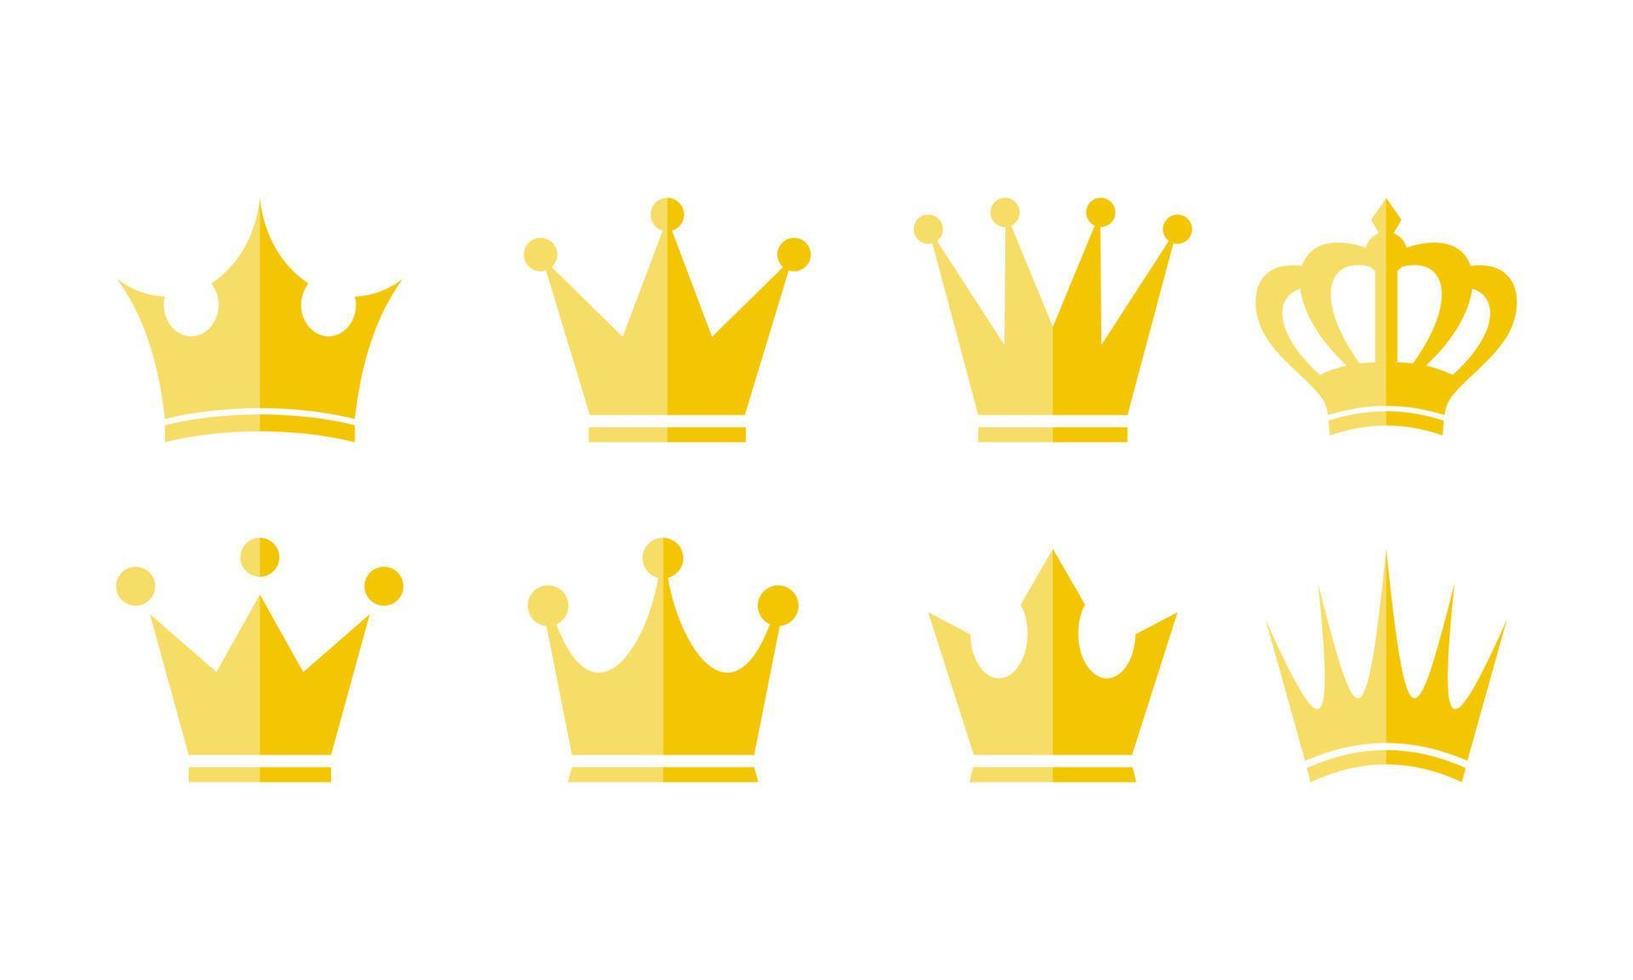 ilustração em vetor plana de conjunto de ícones de coroa de ouro. adequado para elemento de design de luxo, premium e melhor rótulo de produto. símbolo da coroa do rei de ouro em estilo simples.